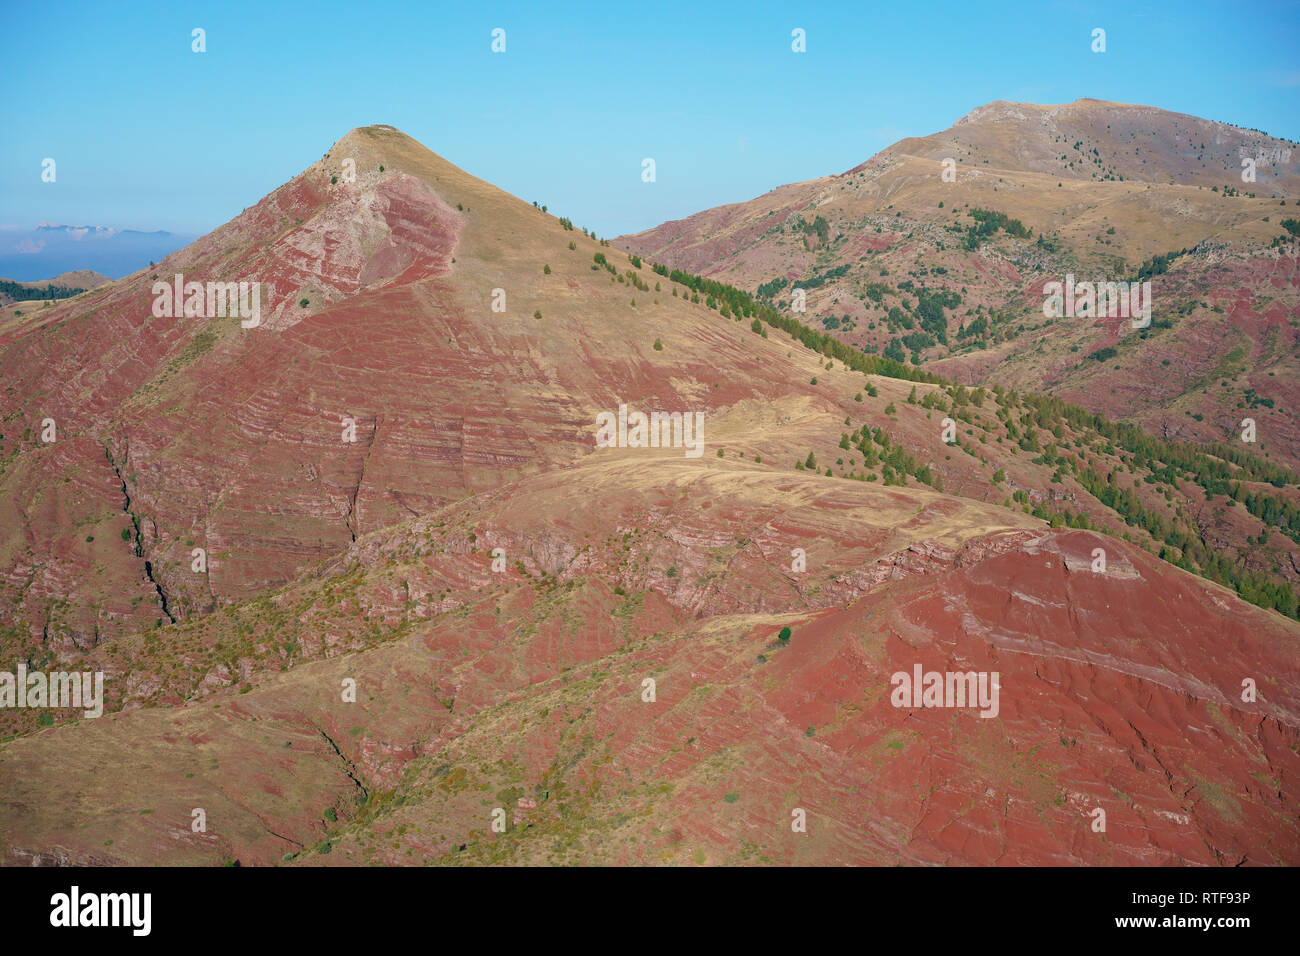 VUE AÉRIENNE. Paysage inhabituel de roche rouge dans les Alpes. Sommet de la tête de Rigaud (à gauche) et dôme de Barrot (à droite). Rigaud, Alpes-Maritimes, France. Banque D'Images